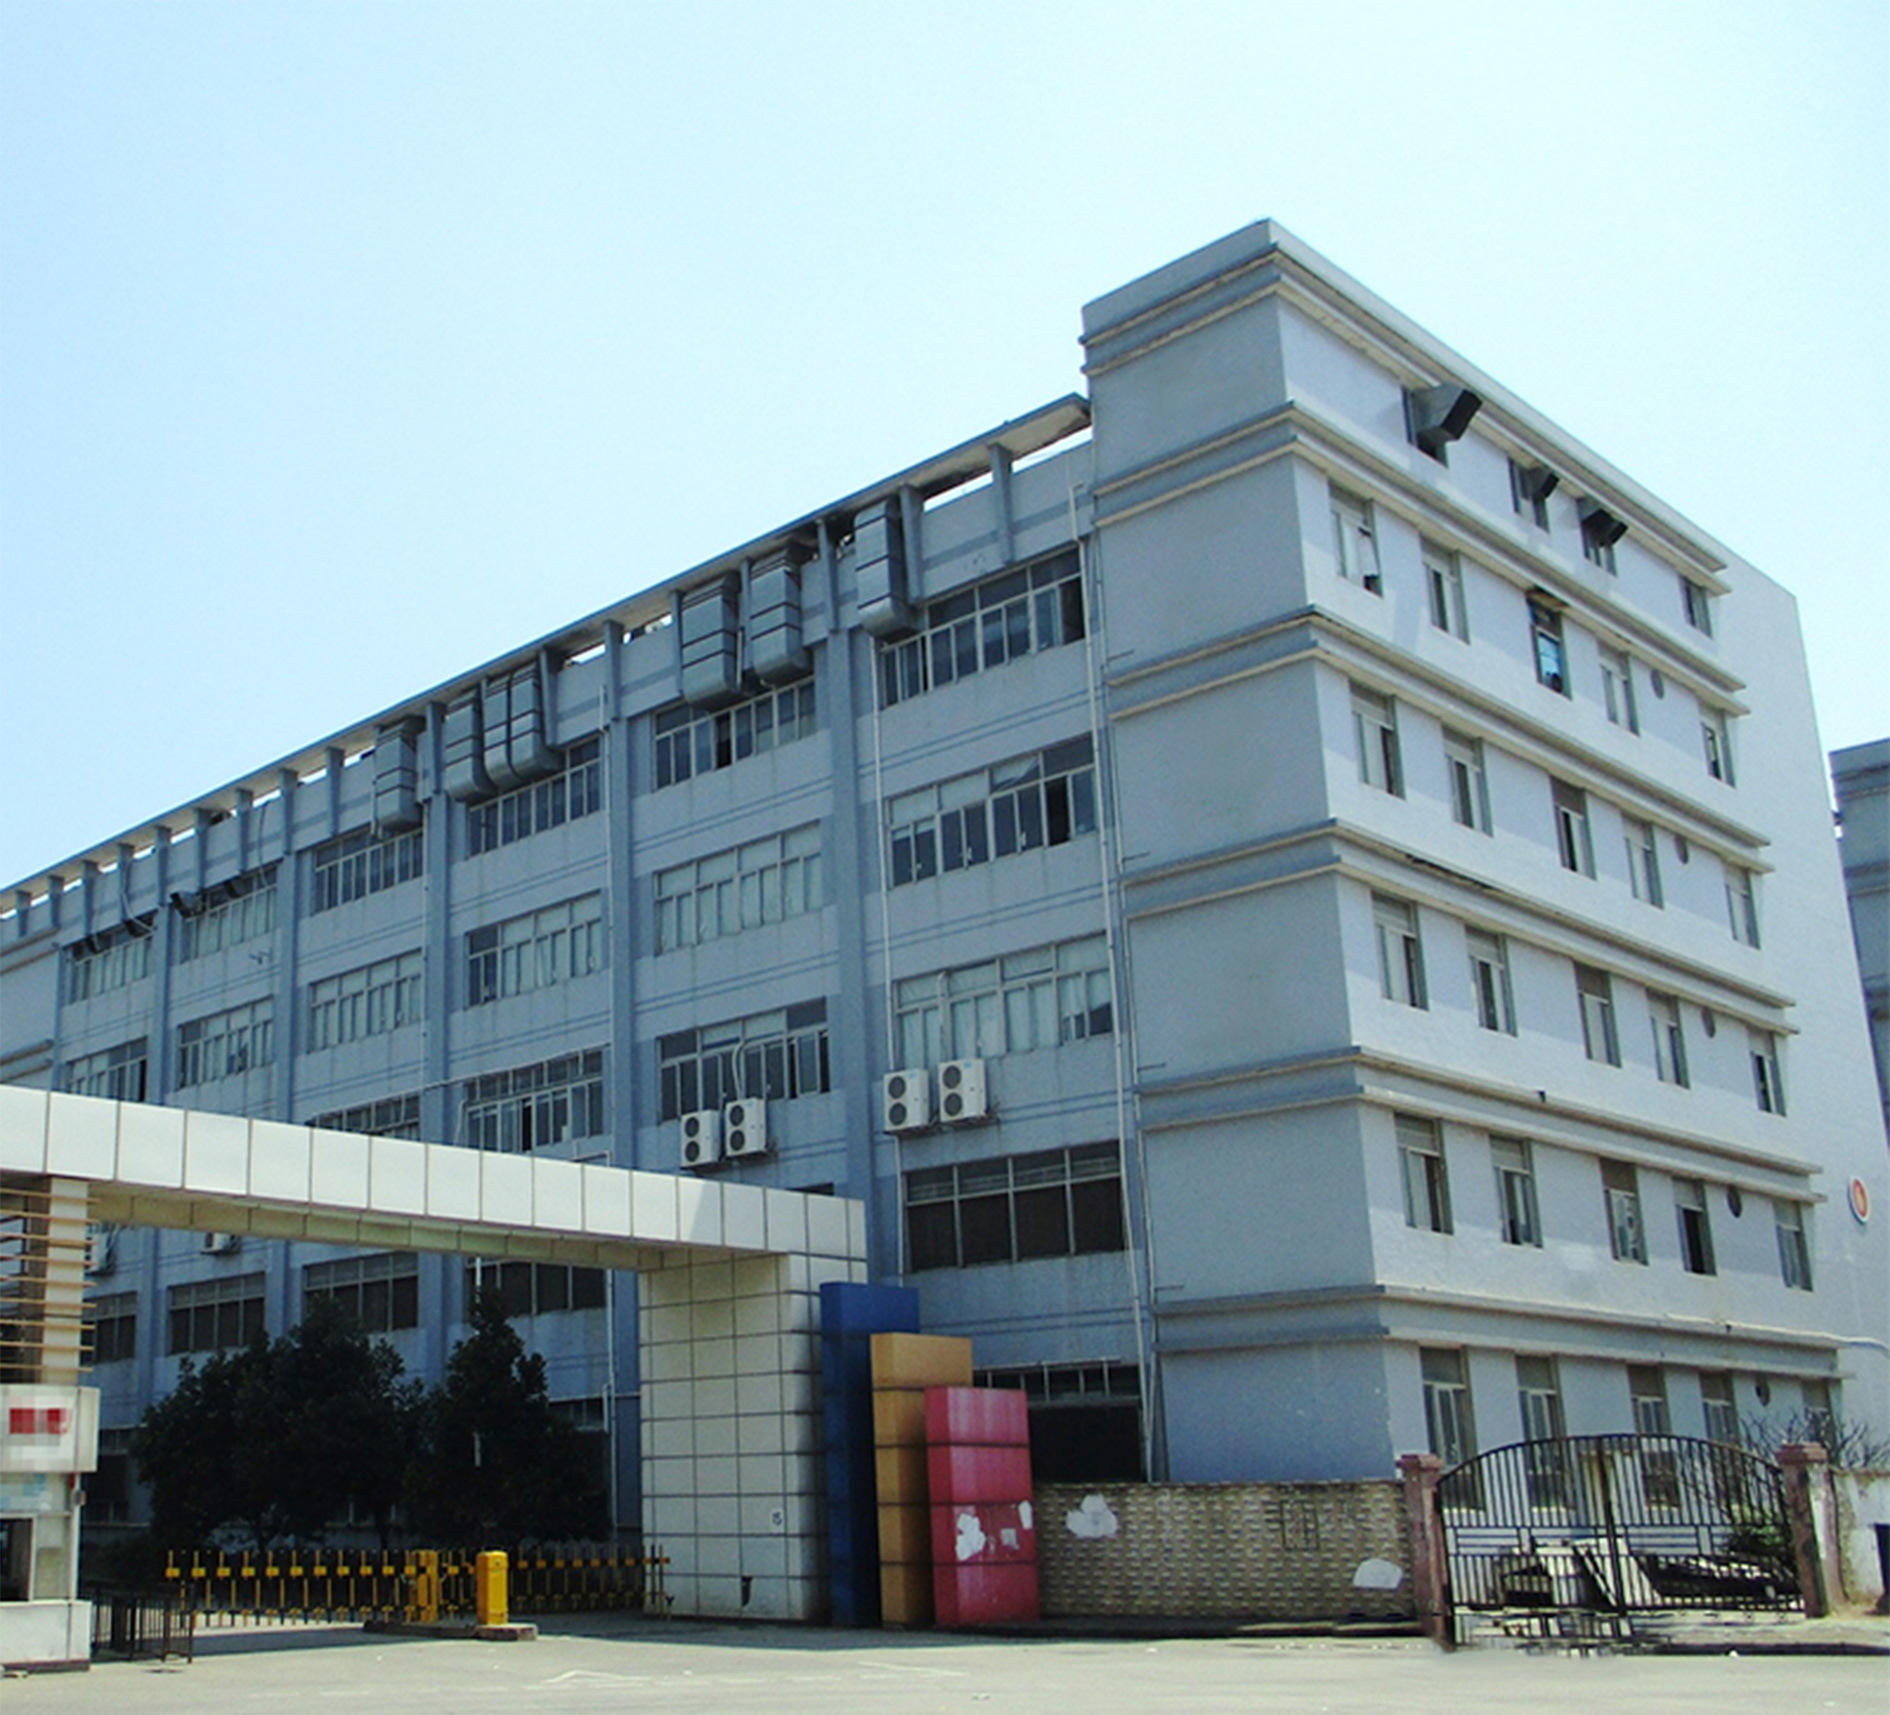   Shenzhen Guangrui Industrial Co., Ltd